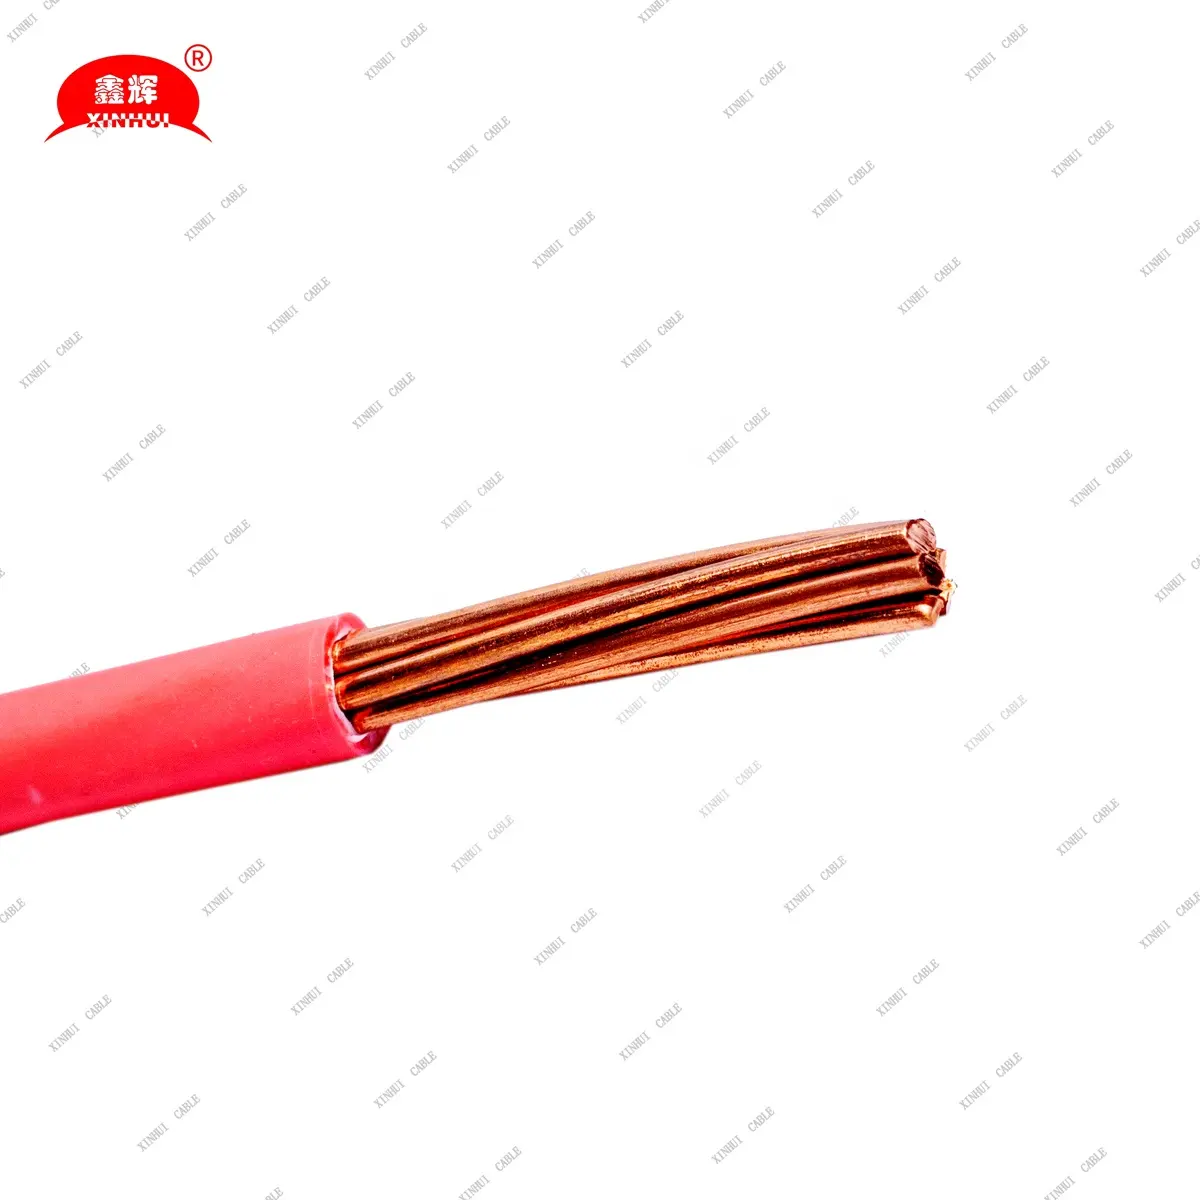 Várias especificações de fios com núcleo de cobre XINHUI, de alto custo-benefício, 1,5 mm, 2,5 mm, 4 mm e 6 mm, vendidos diretamente pelos fabricantes